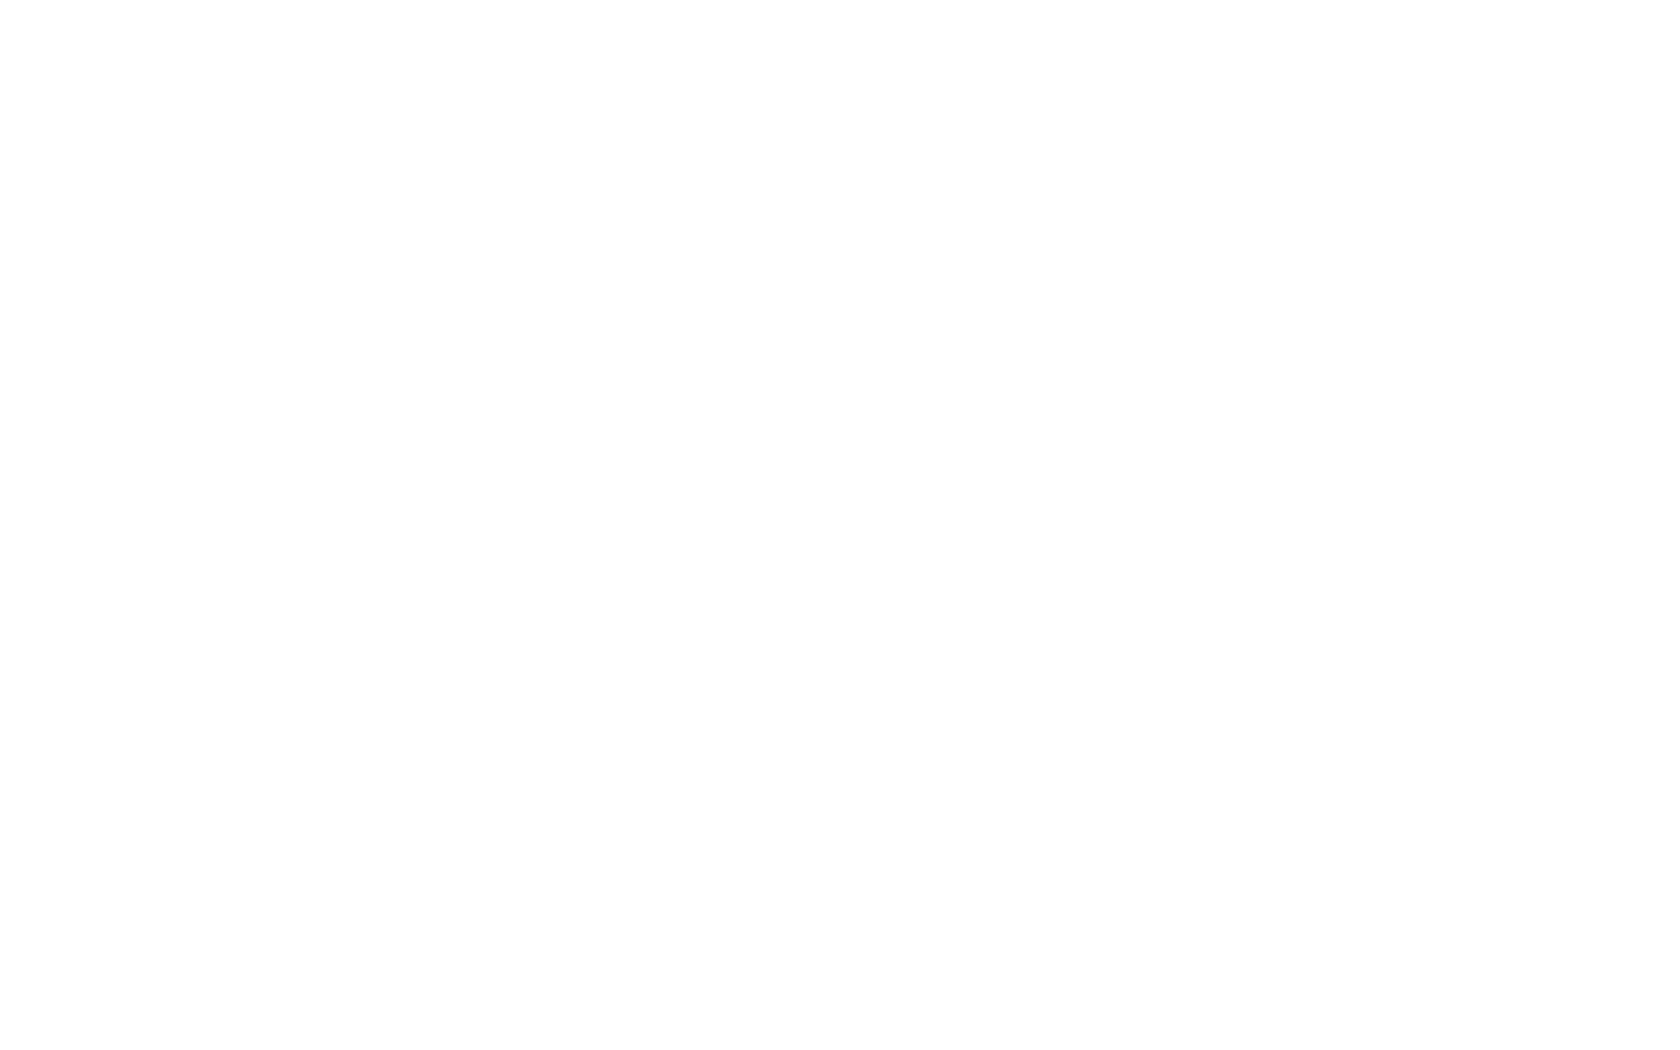 Дизайн логотипа и этикетки консервы Рыбный Четверг. Брендинговое агентство Force Gear.